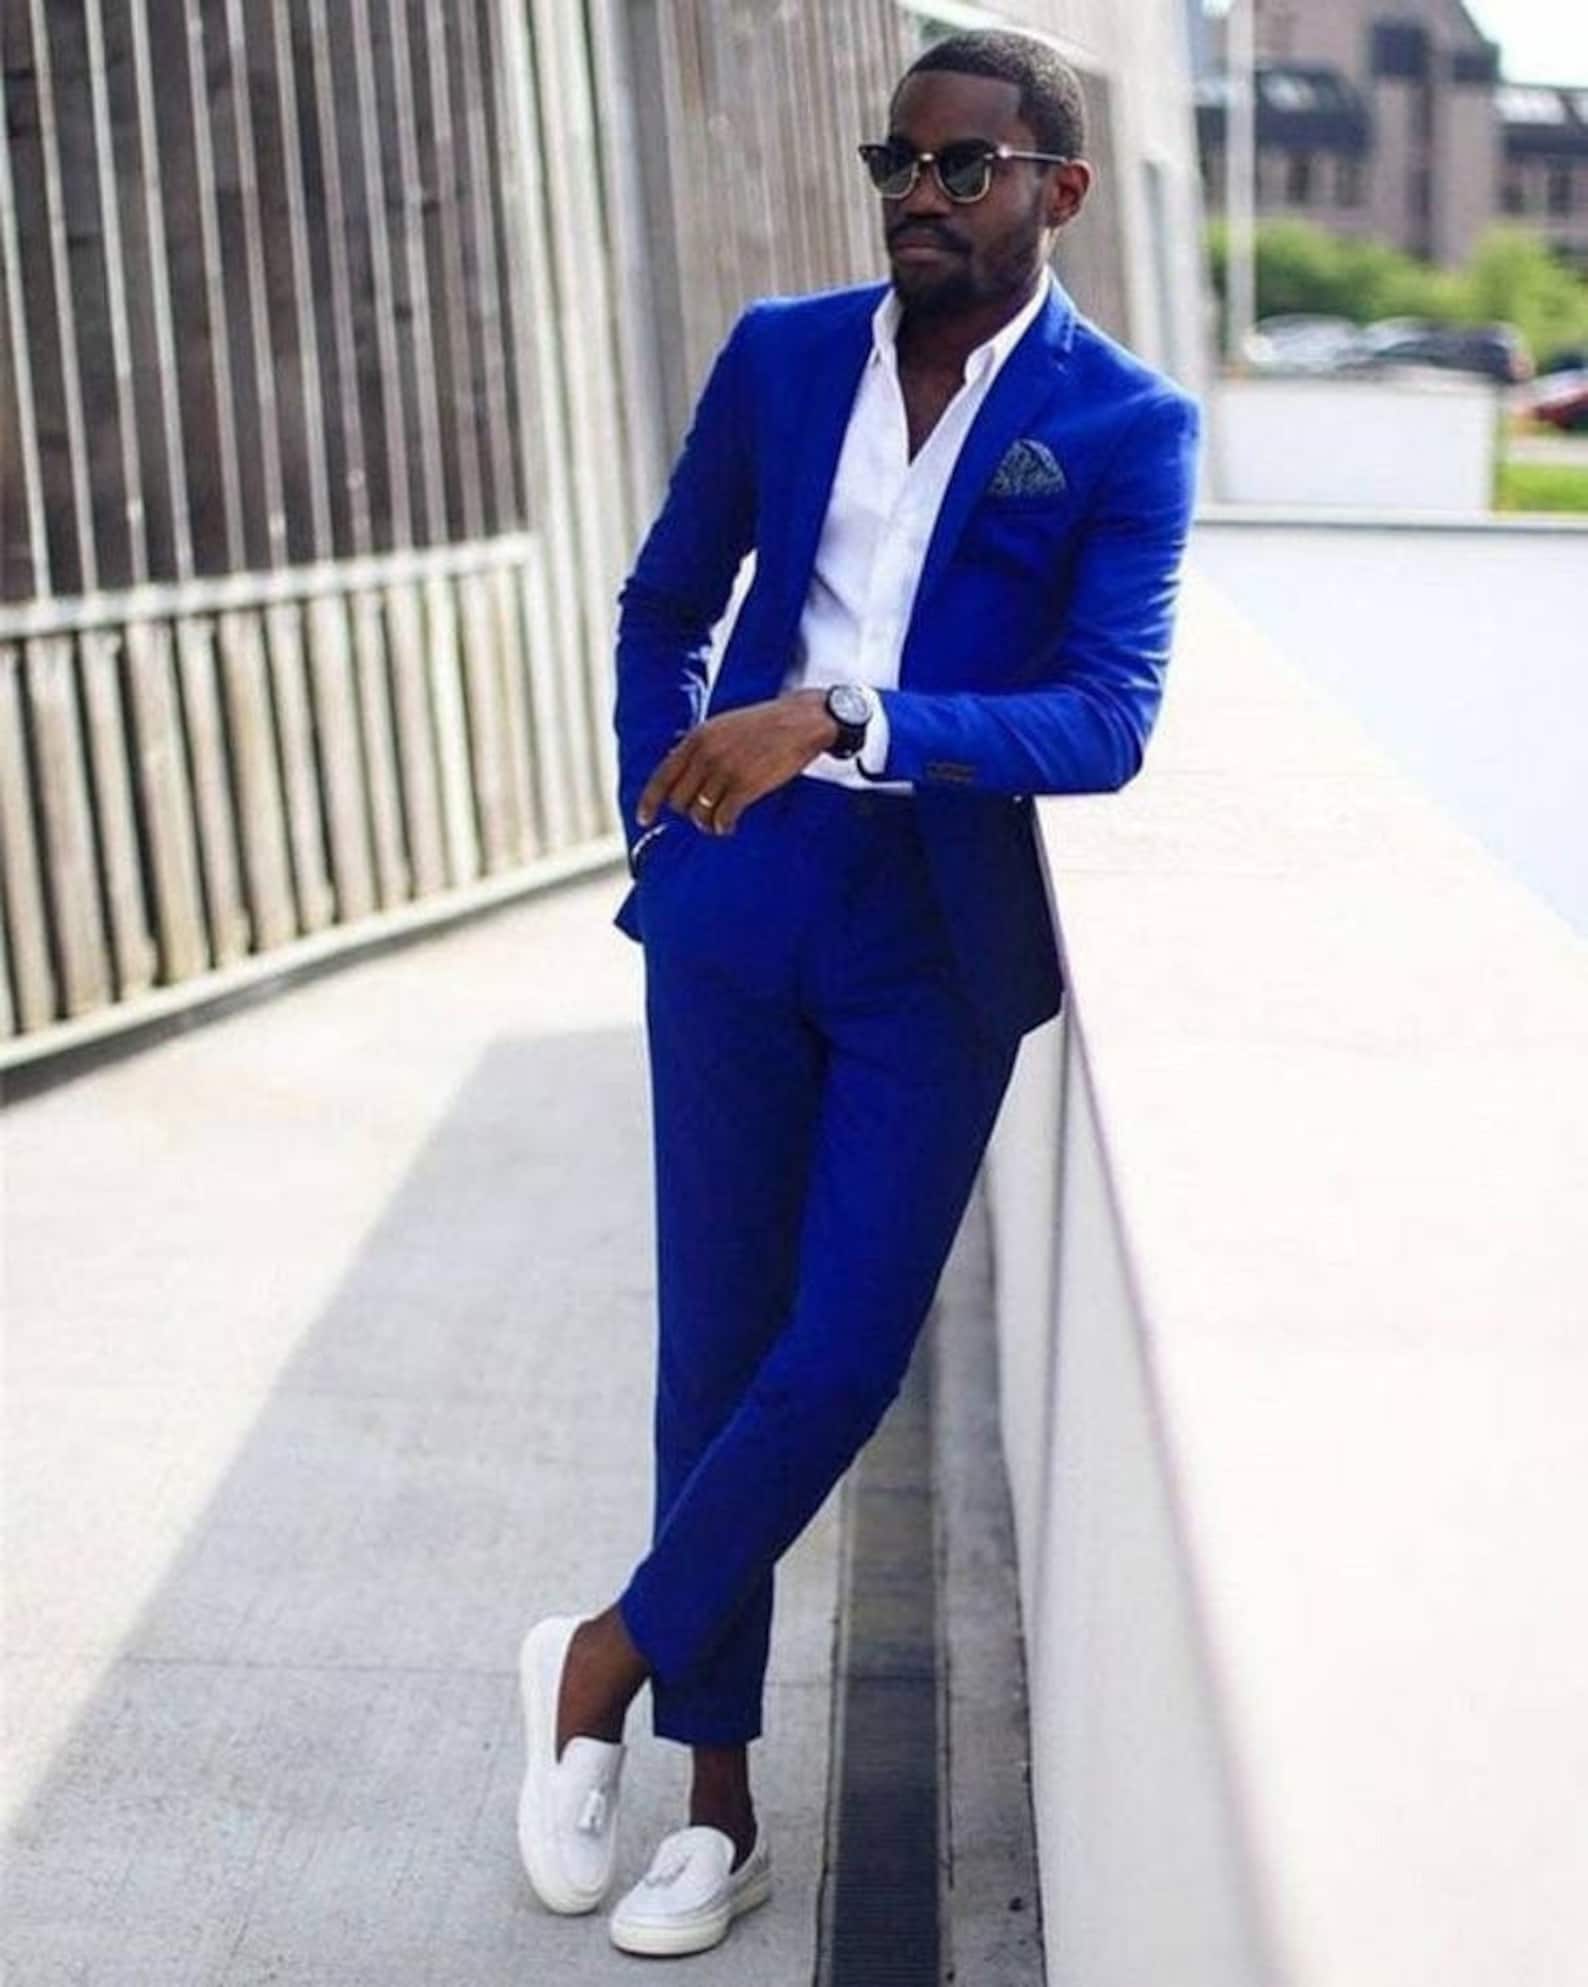 Royal Blue Two Piece Suit Vest for Men Wedding Suit Jacket for Men ...